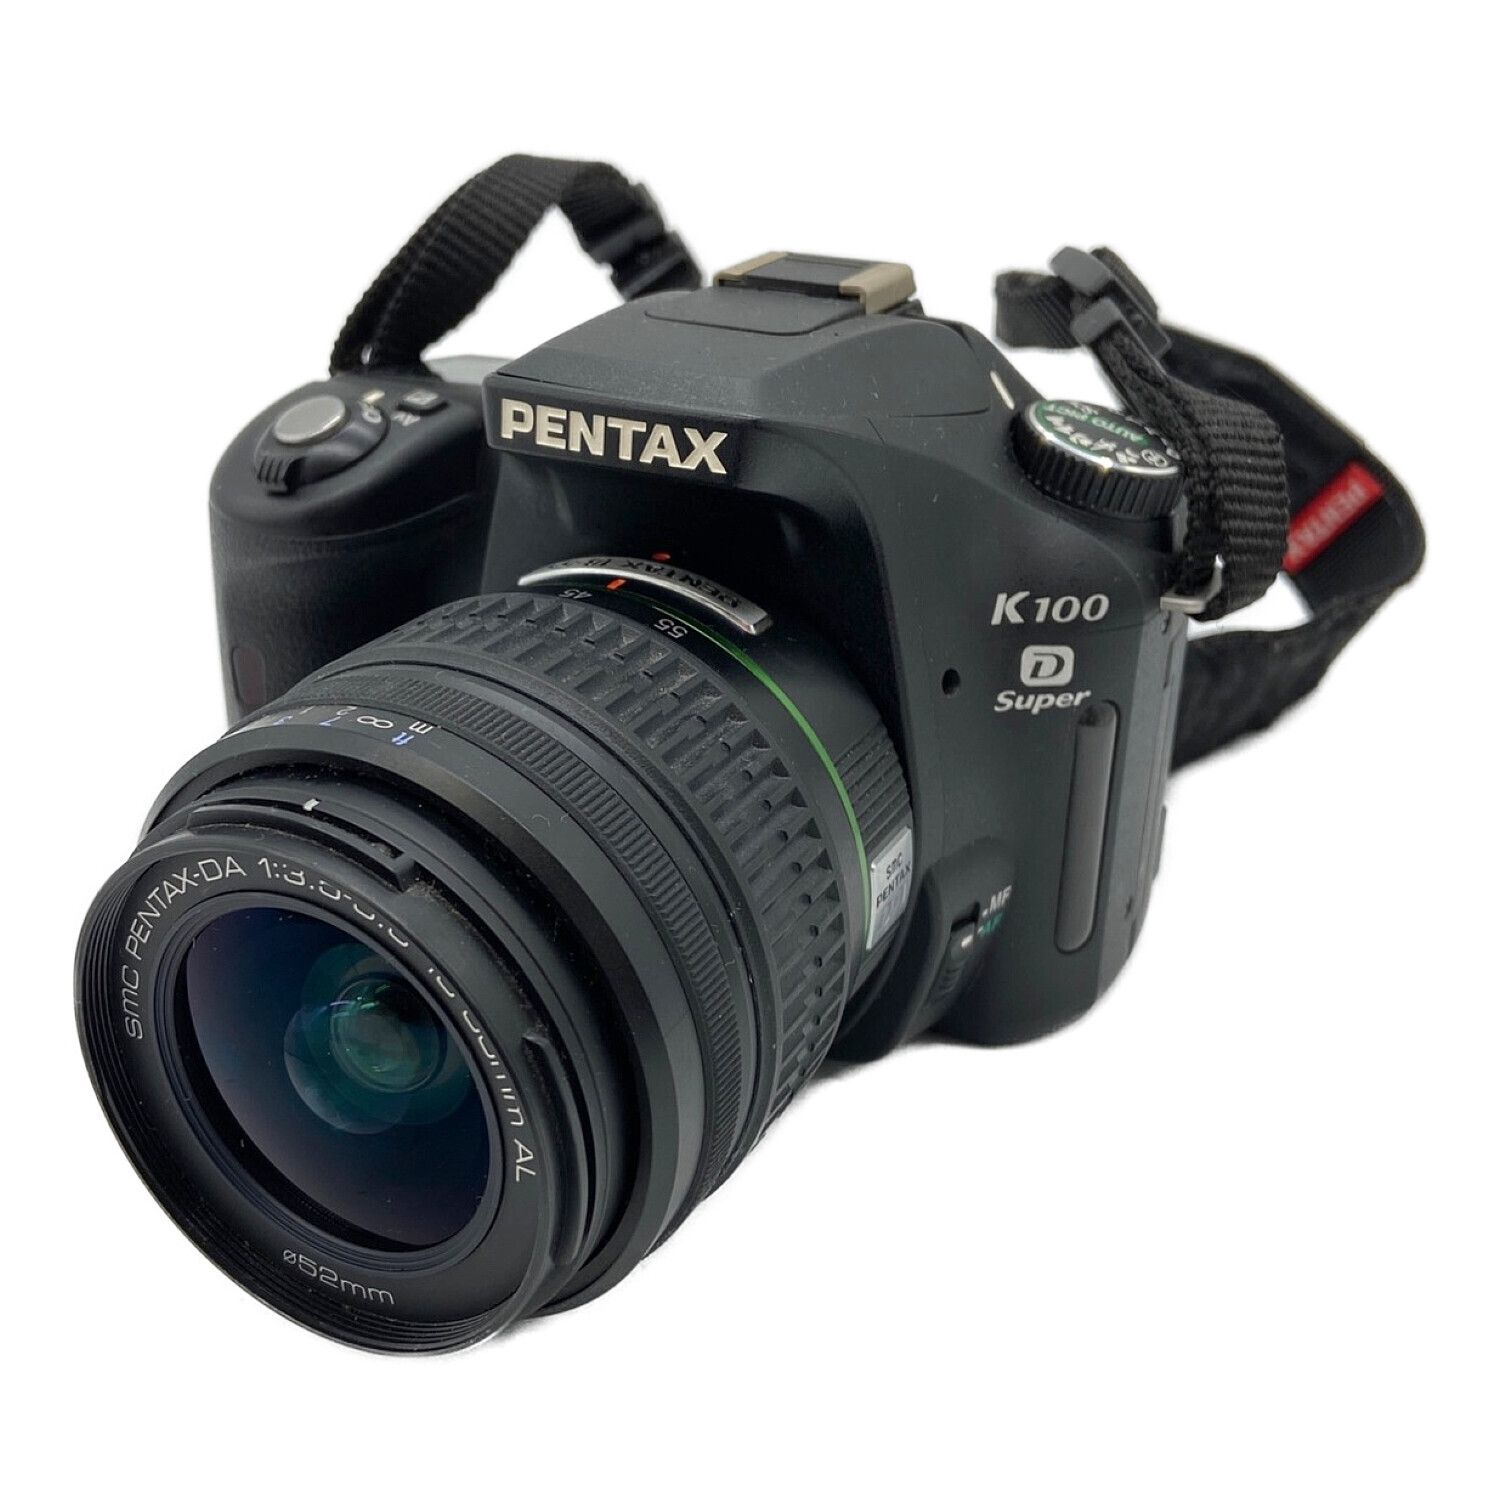 PENTAX (ペンタックス) 一眼レフカメラ K100D Super 631万画素(総